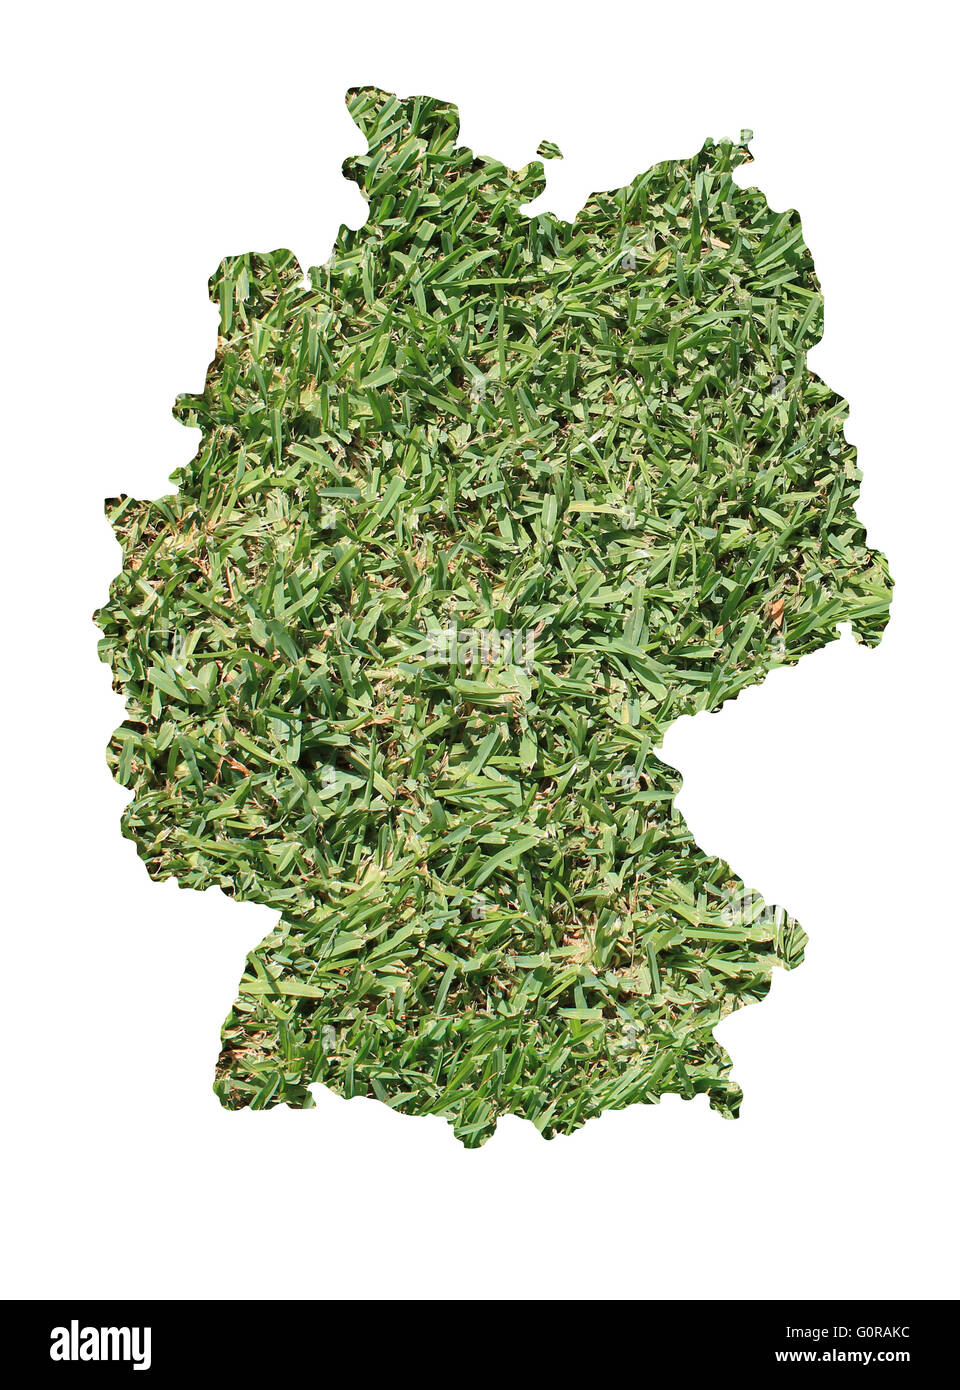 Mappa della Germania riempito con erba verde, ambientale e concetto ecologico. Foto Stock